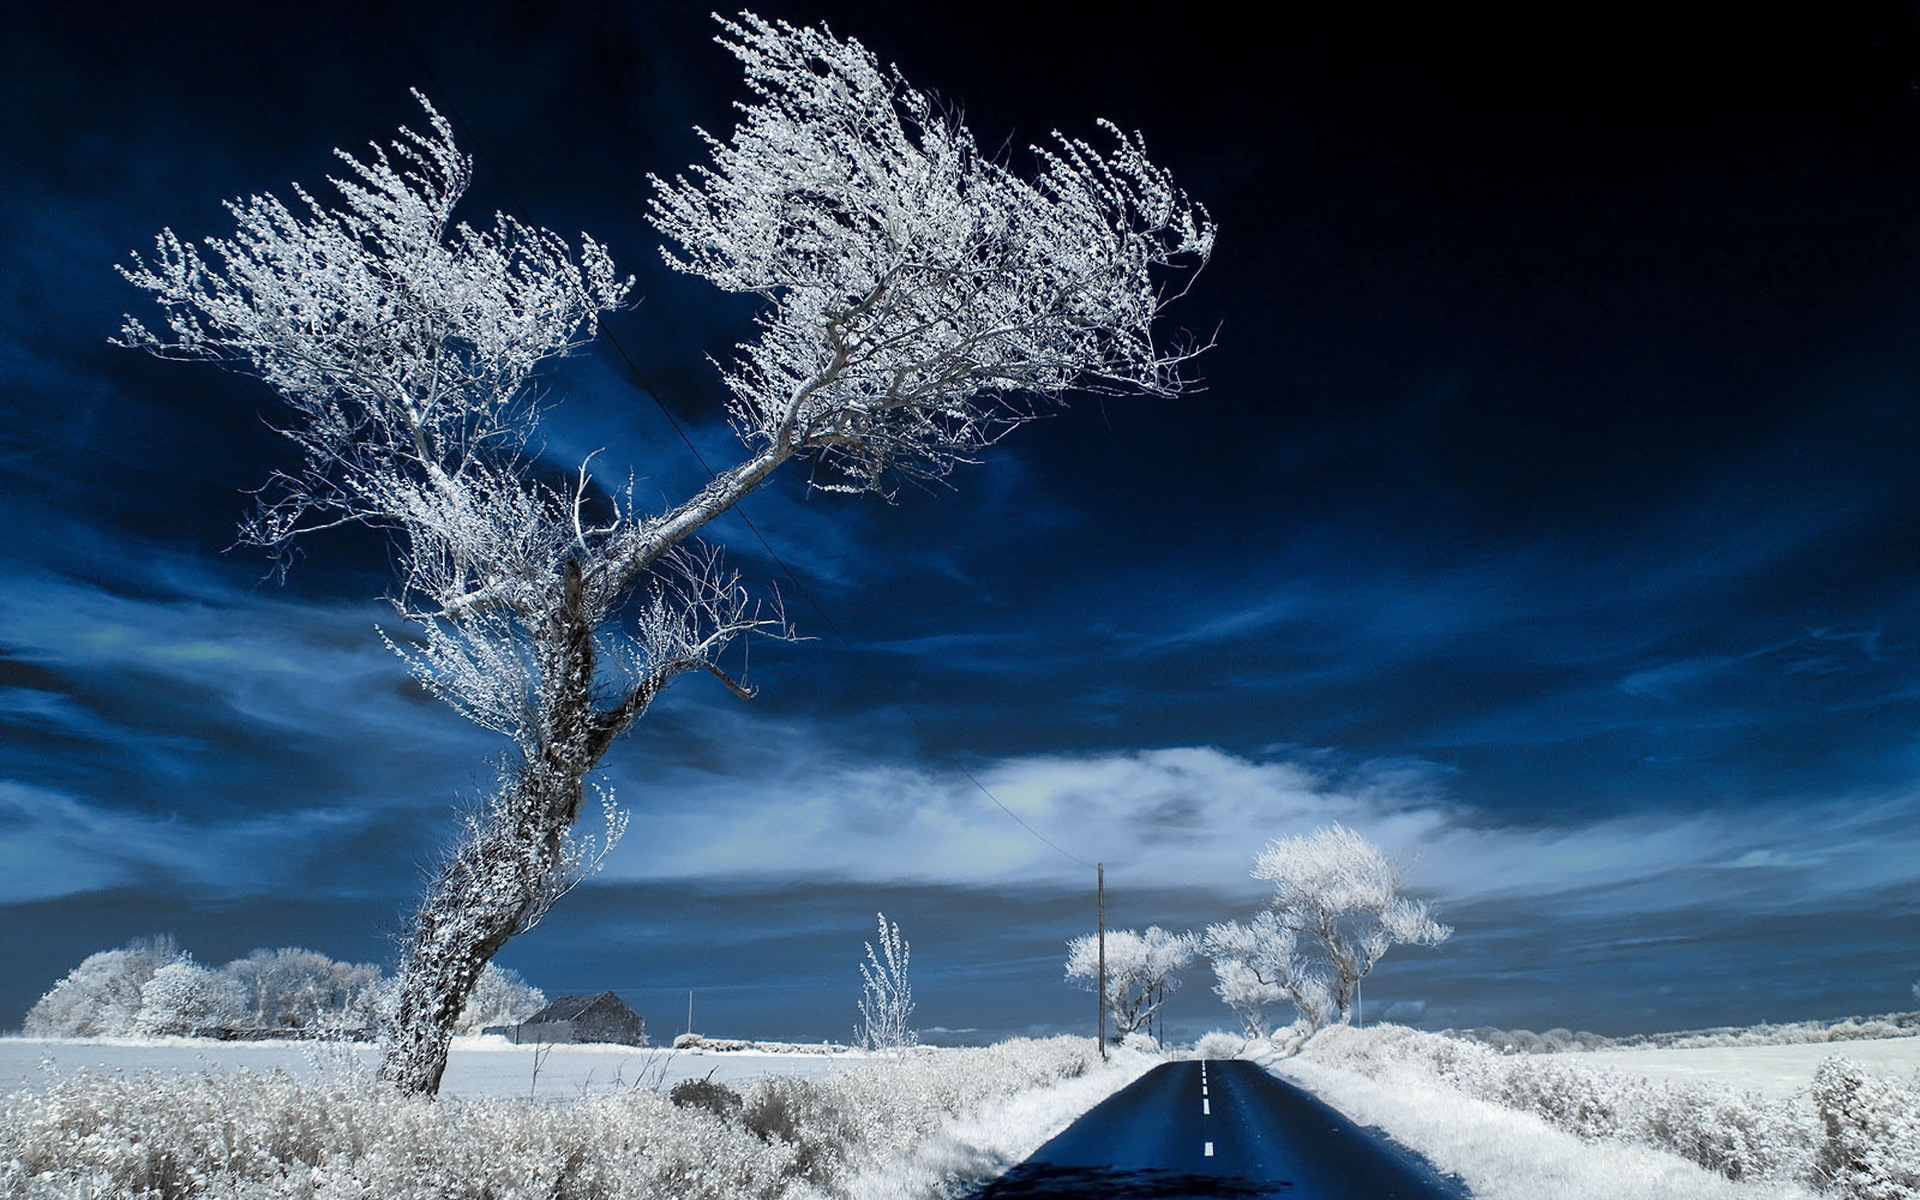 Скачать обои бесплатно Зима, Снег, Дорога, Дерево, Поле, Сделано Человеком картинка на рабочий стол ПК